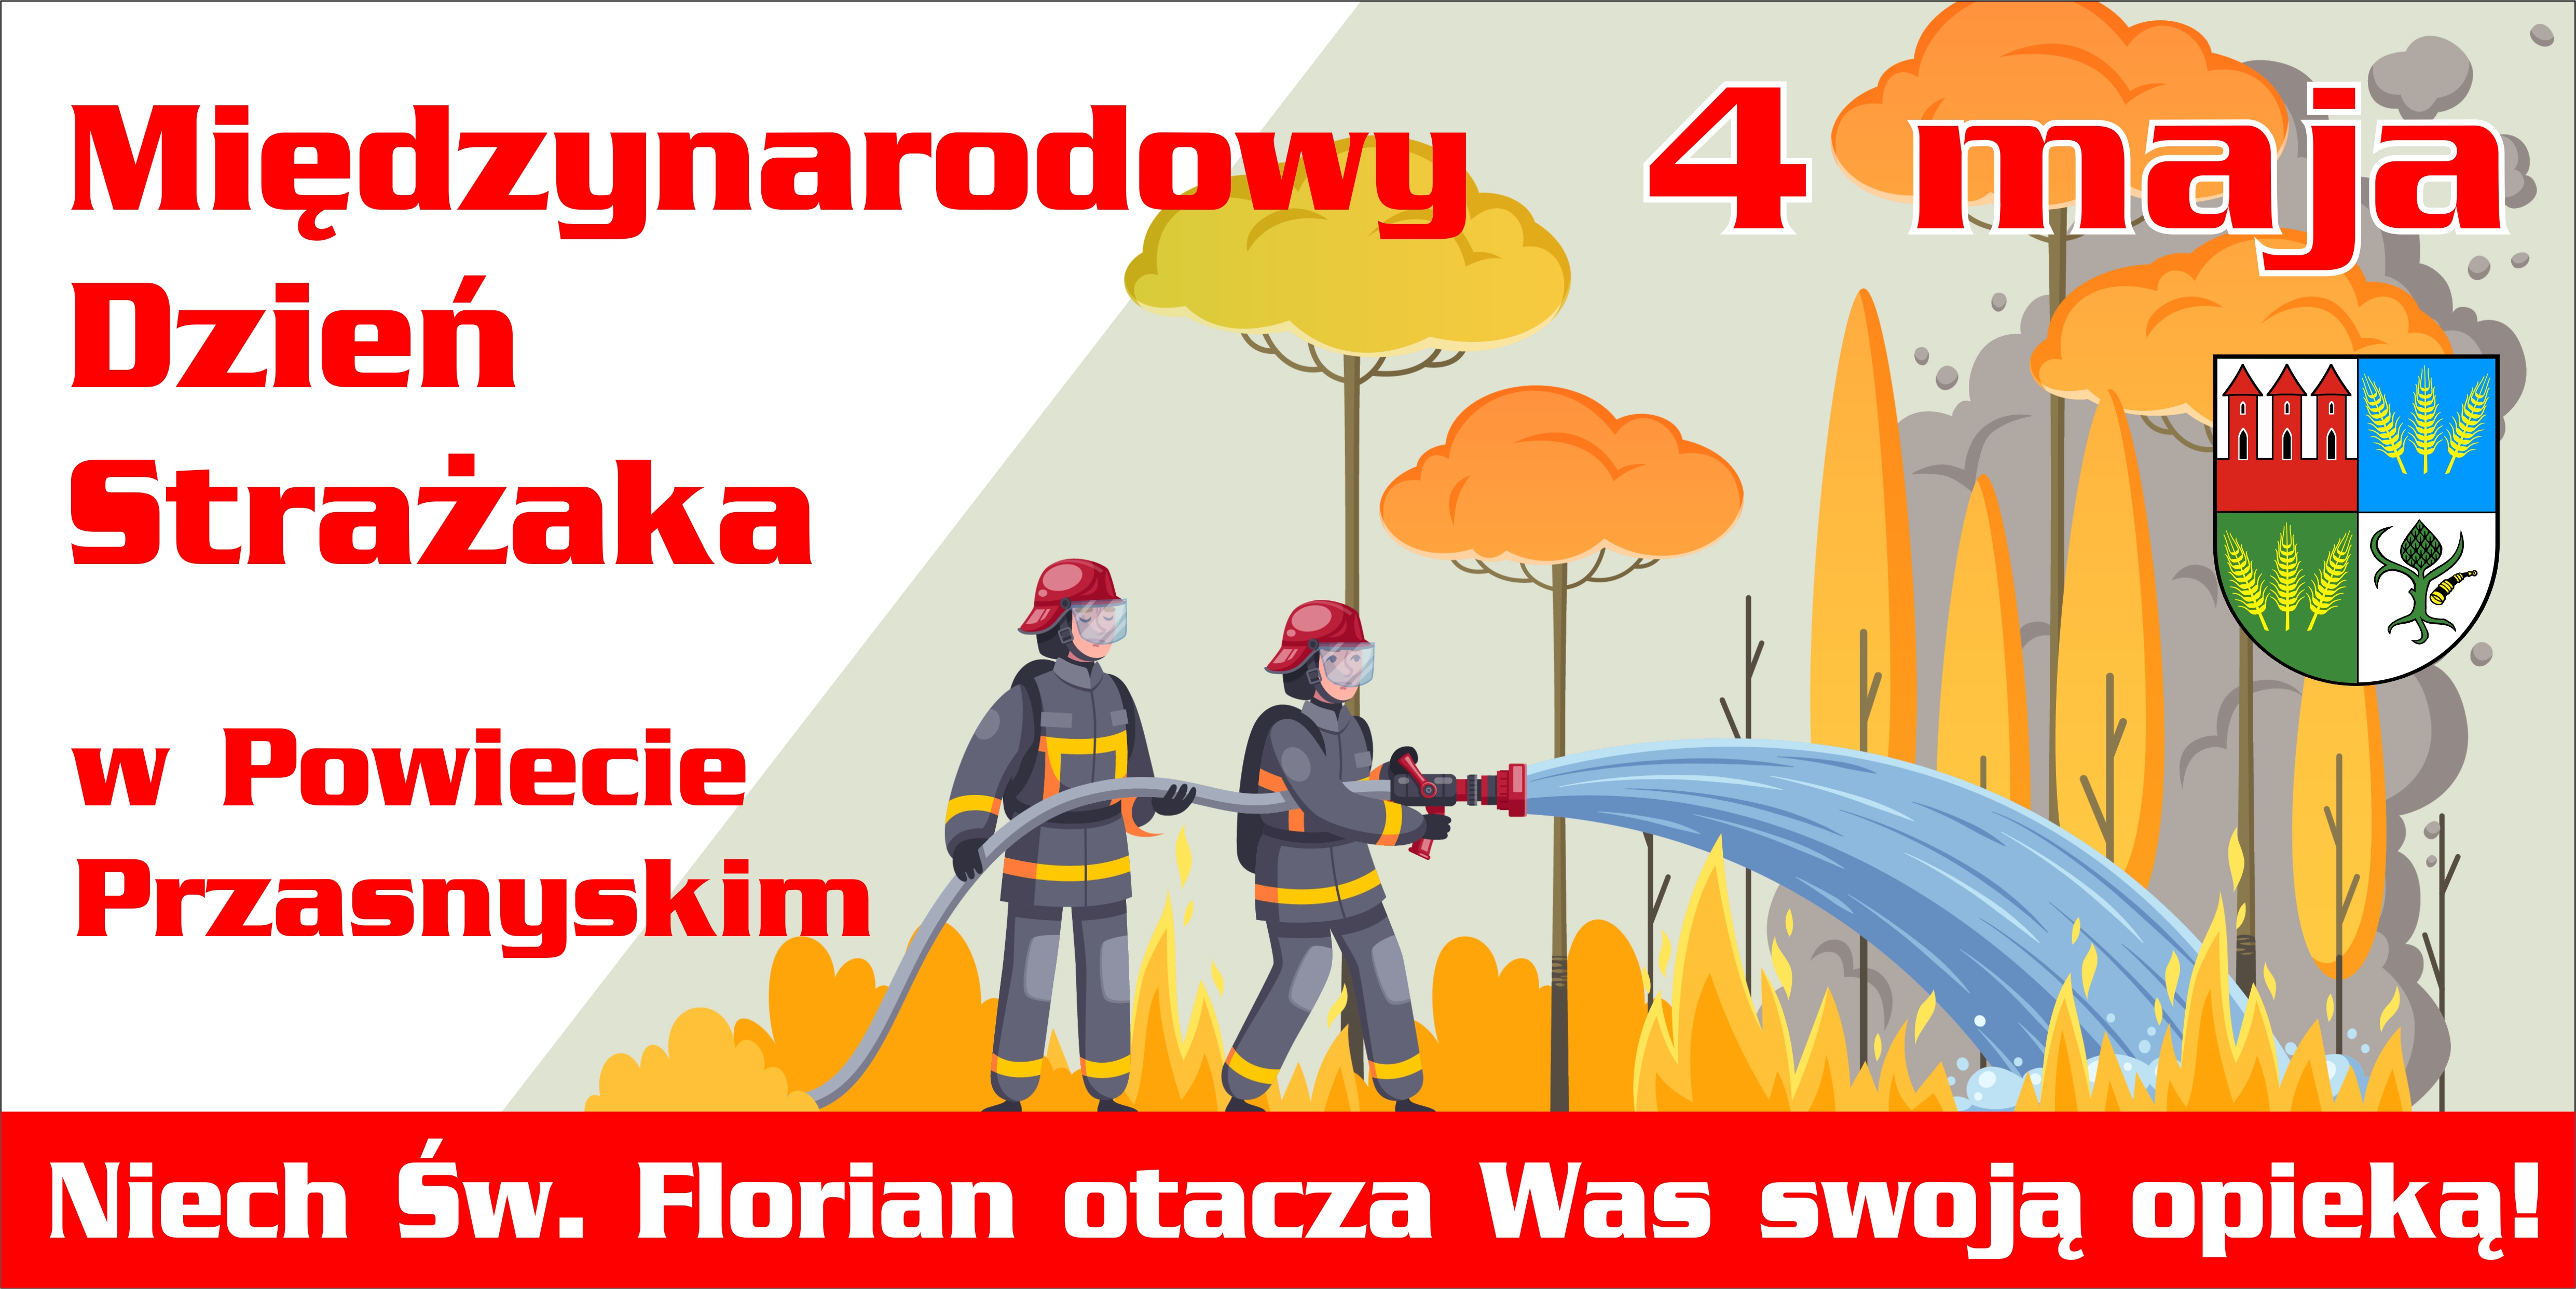 Międzynarodowy Dzień Strażaka w Powiecie Przasnyskim - grafika promocyjna